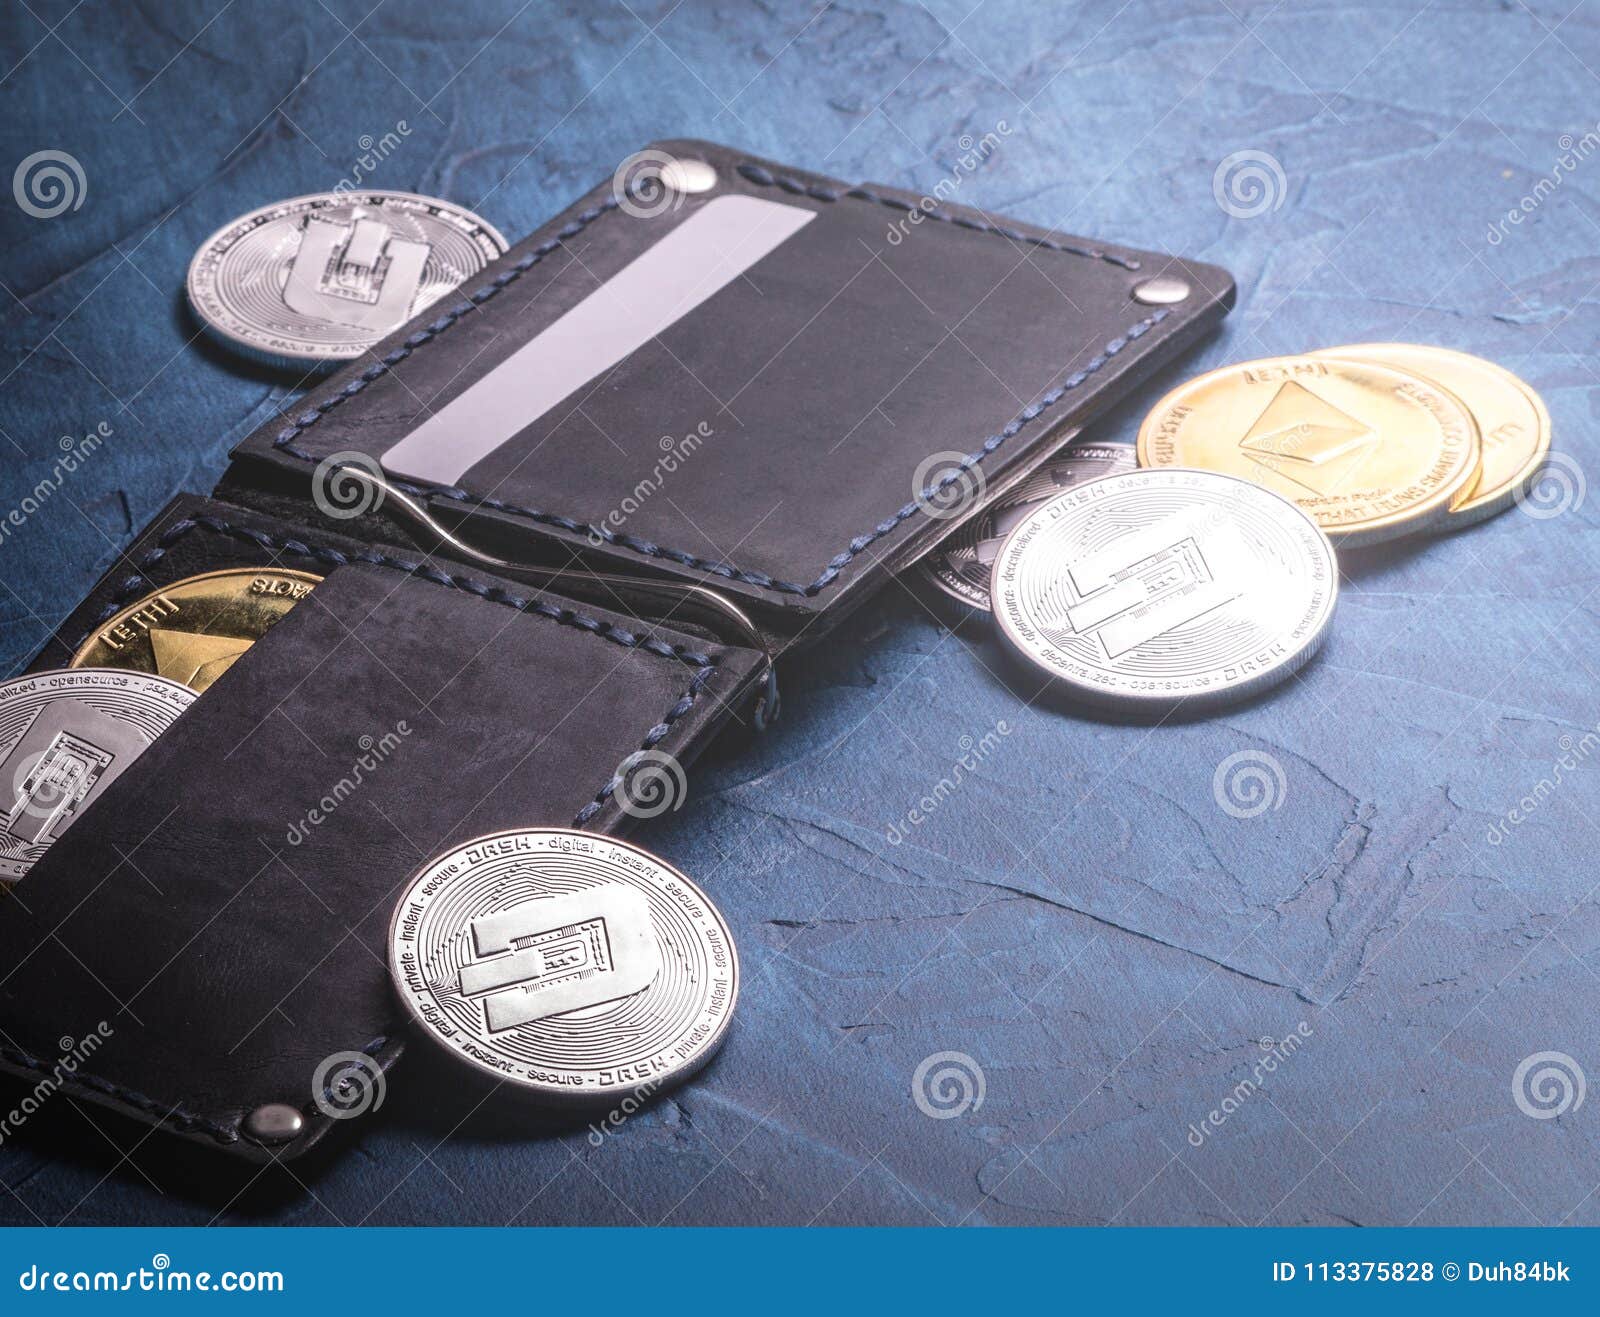 Dashcoin Wallet Crypto Card physical digital wallet card DASH